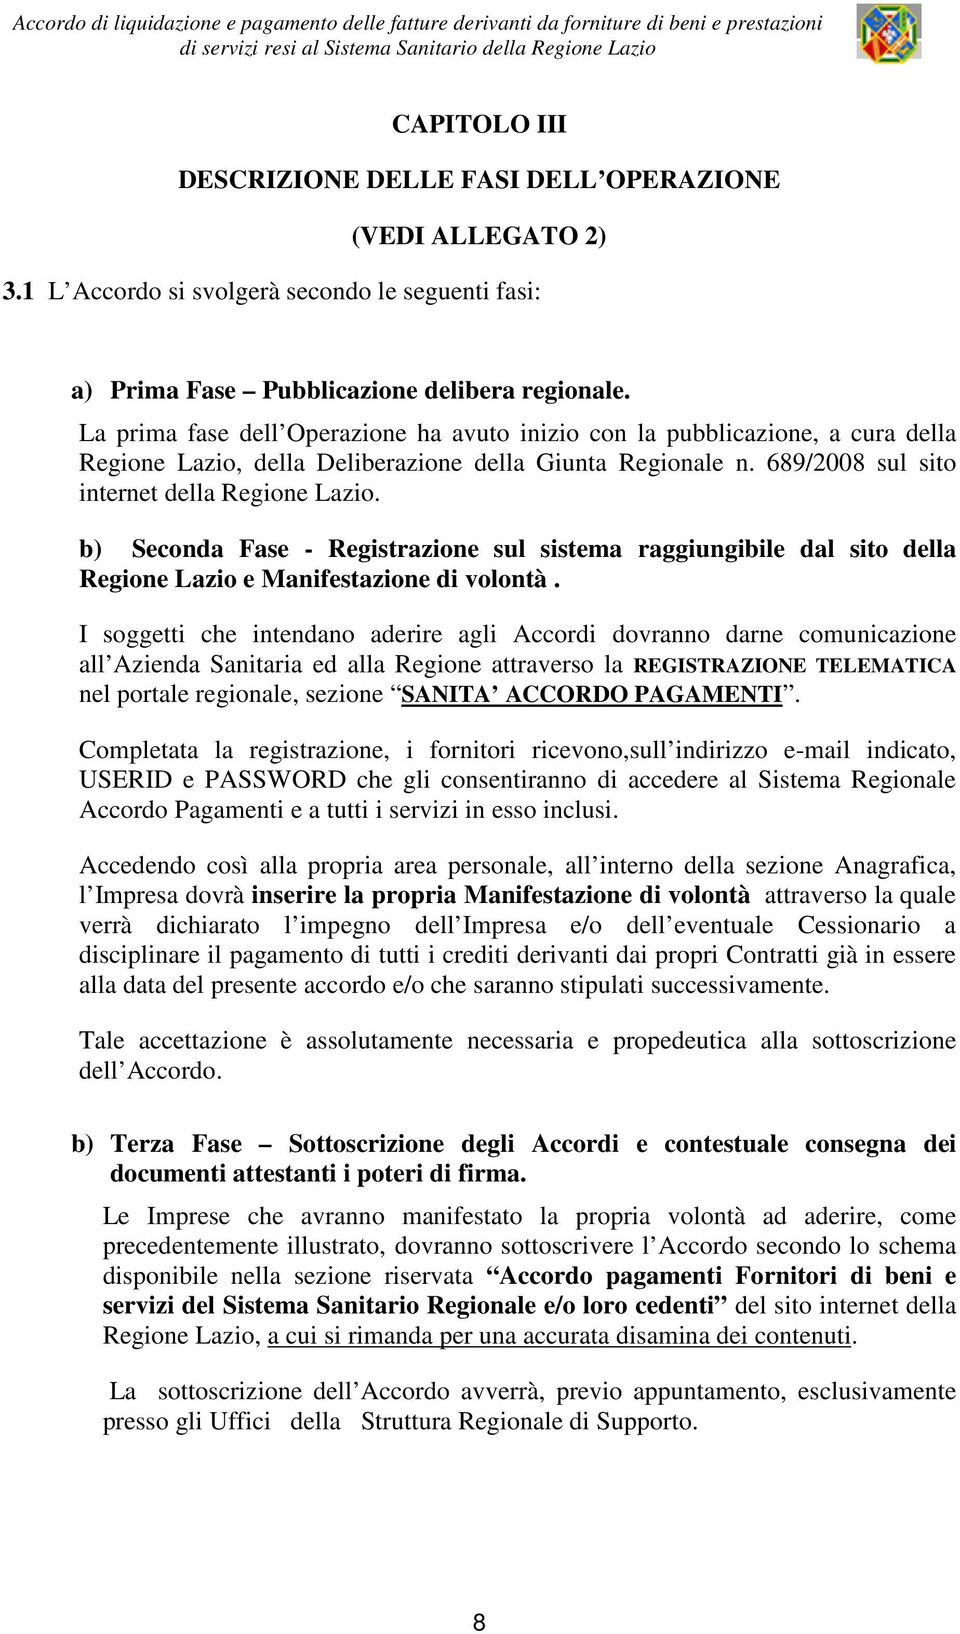 b) Seconda Fase - Registrazione sul sistema raggiungibile dal sito della Regione Lazio e Manifestazione di volontà.